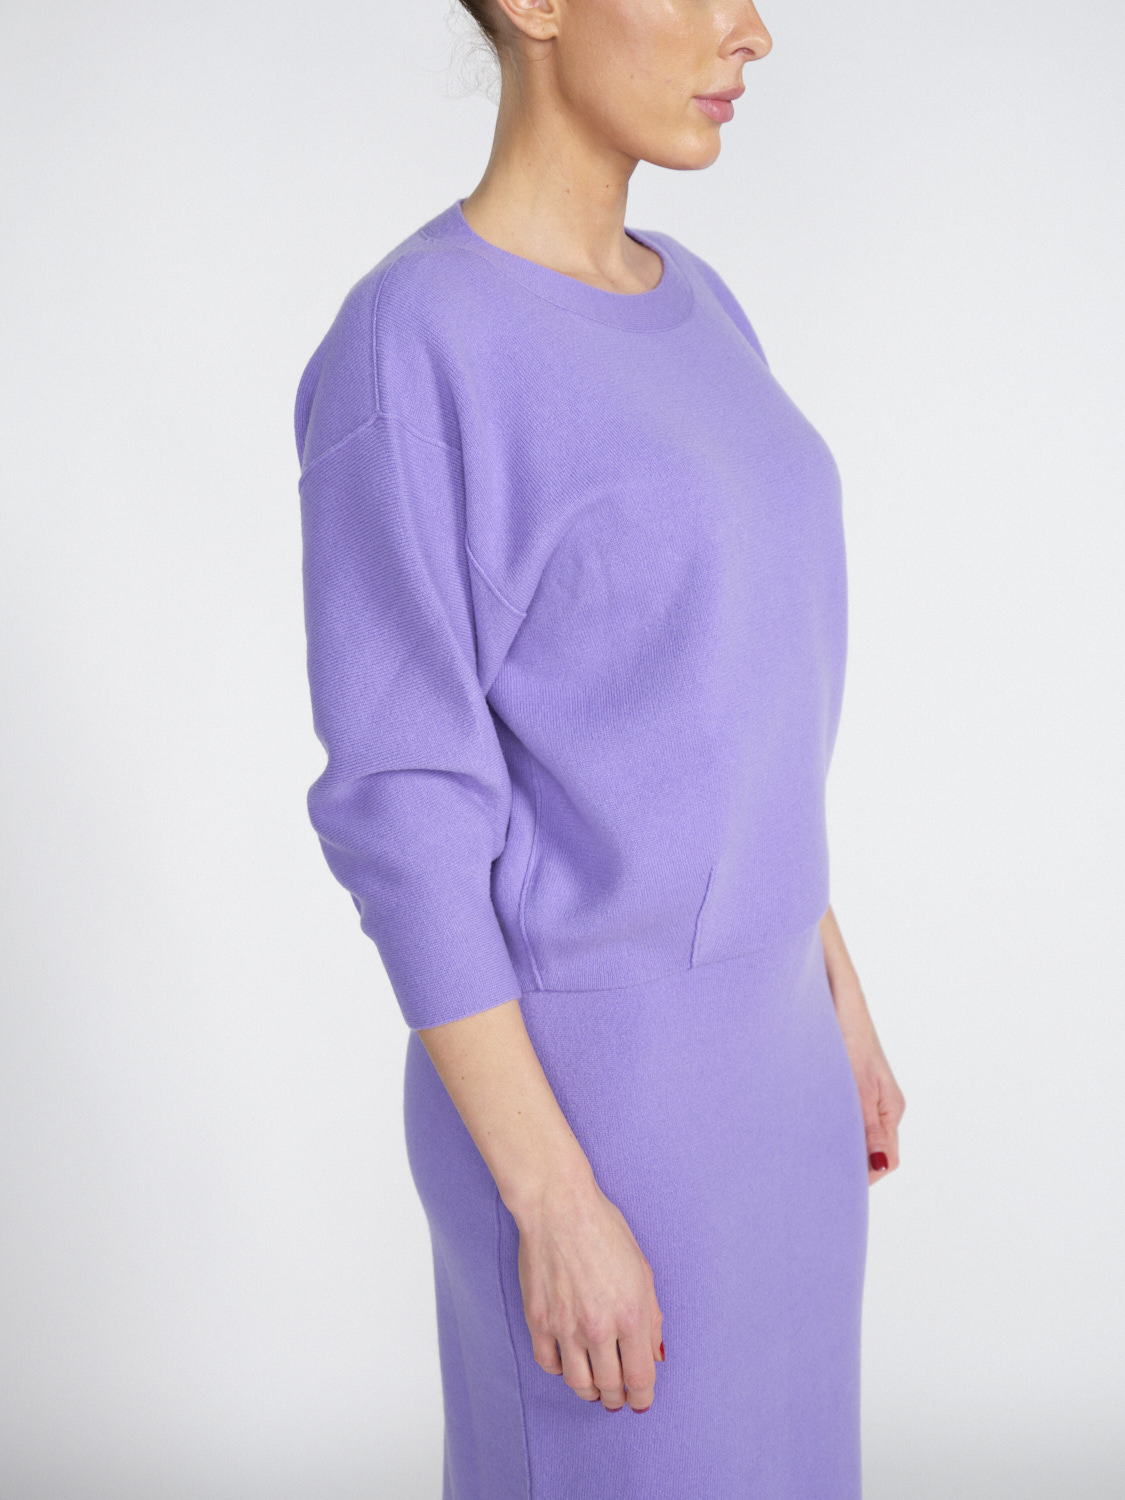 Iris von Arnim Arielle - Cropped cashmere jumper  lila L